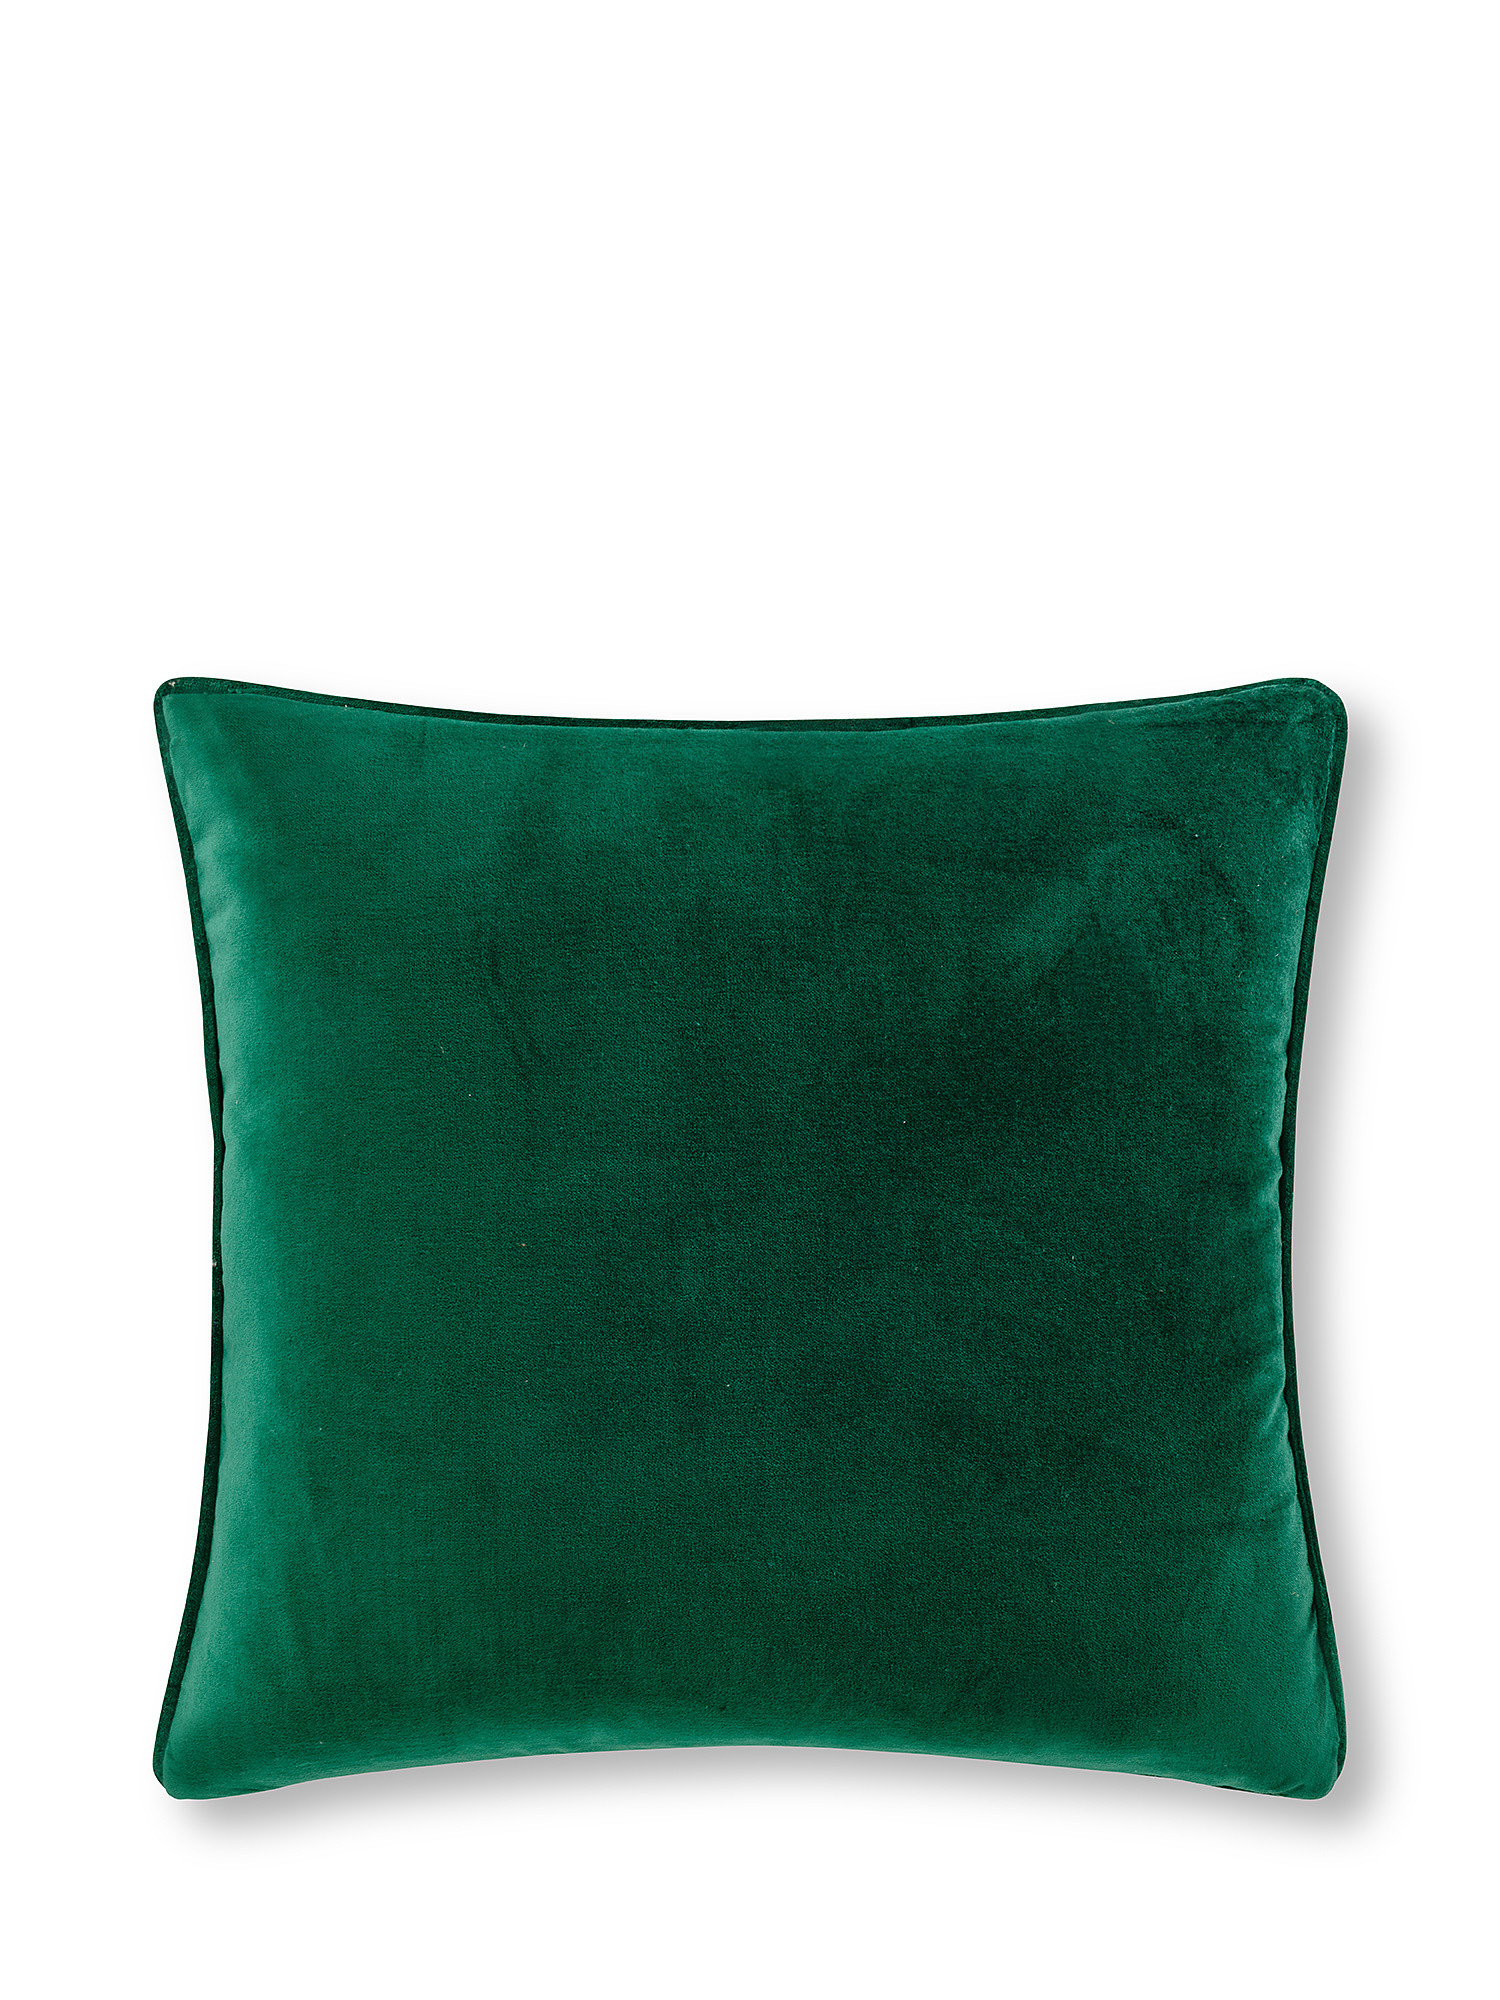 Plain velvet cushion 45x45cm, Green, large image number 0